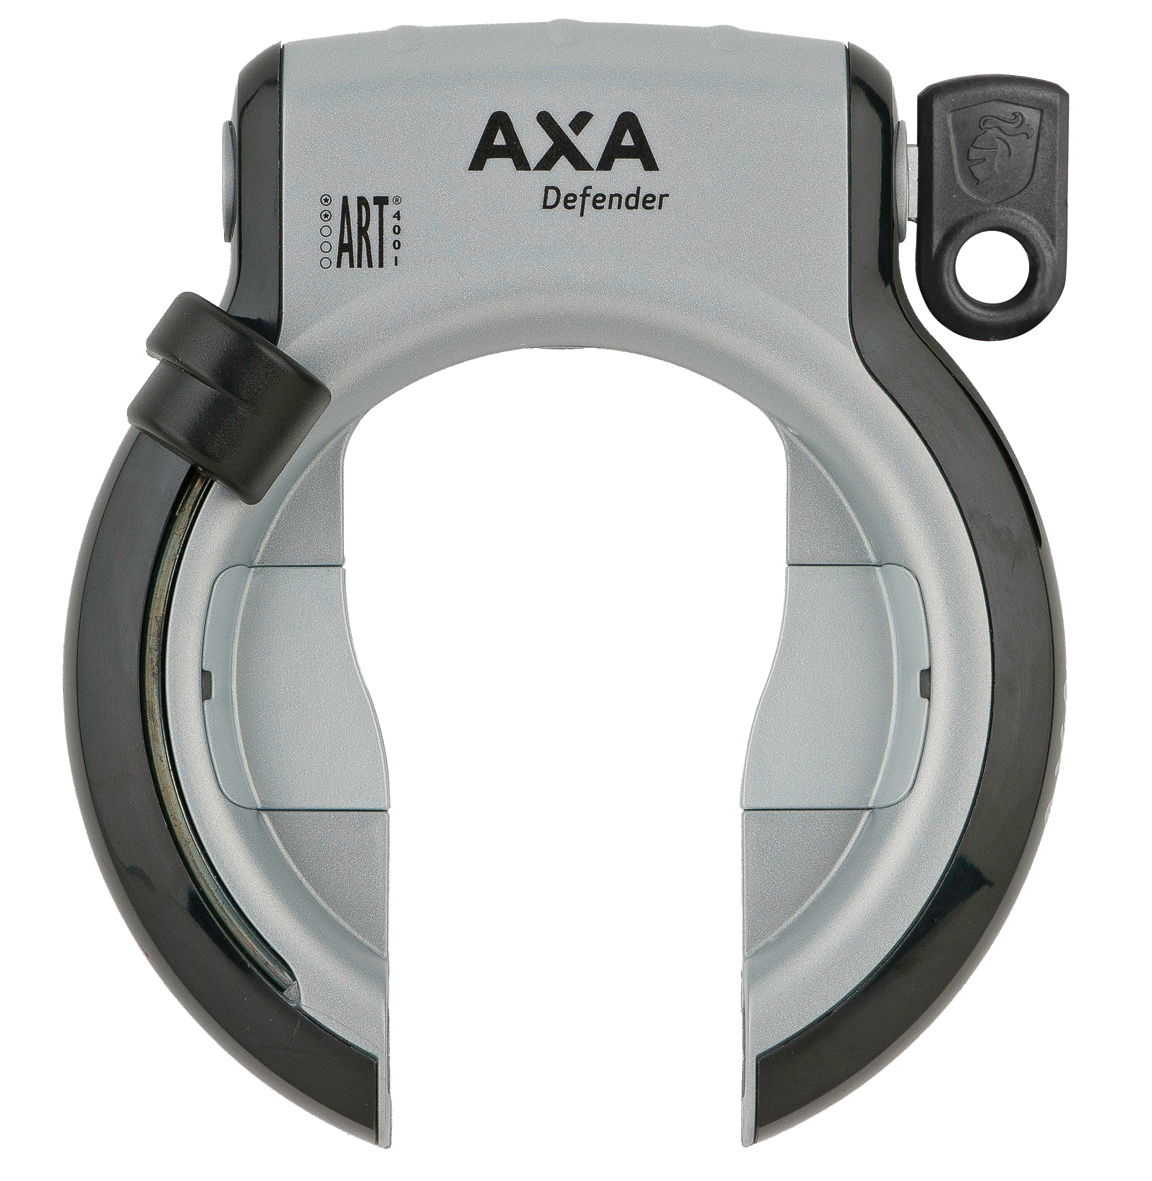 AXA Defender met ART-2 keurmerk - Slotenonline.nl